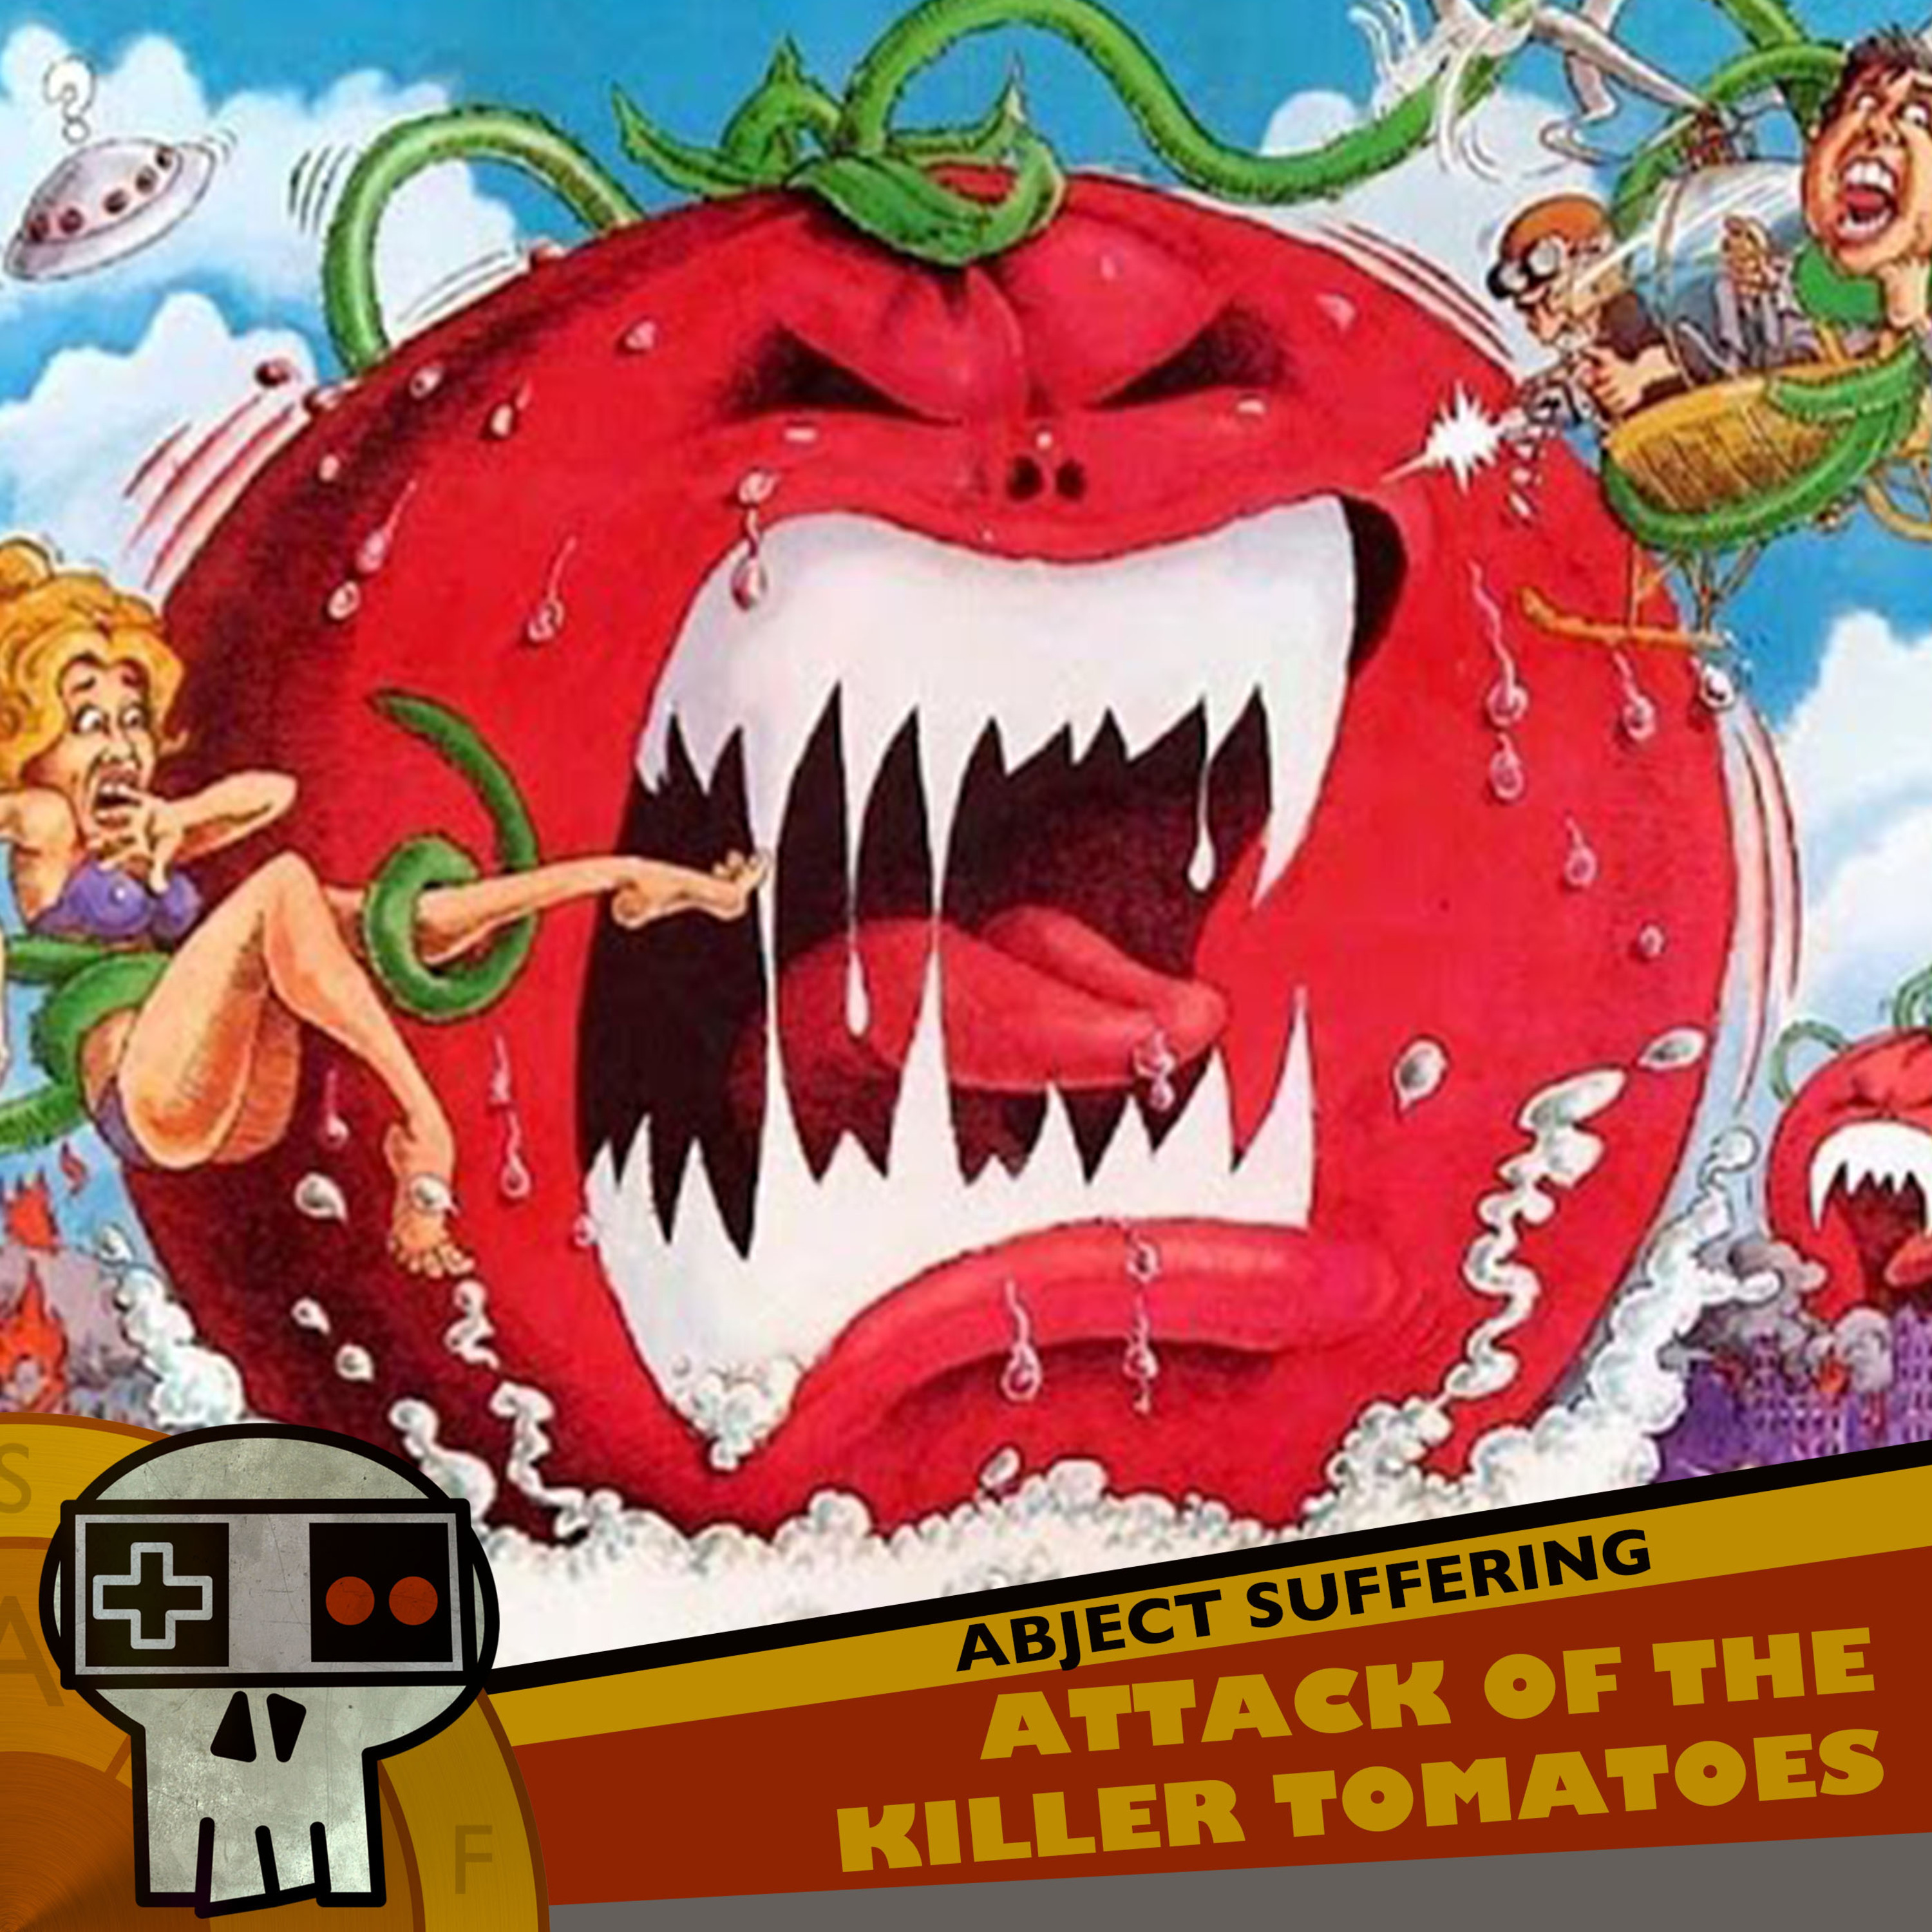 Нападение помидоров. Нападение помидоров-убийц (1978). Атака помидоров-убийц 1978. Нашествие помидоров убийц.